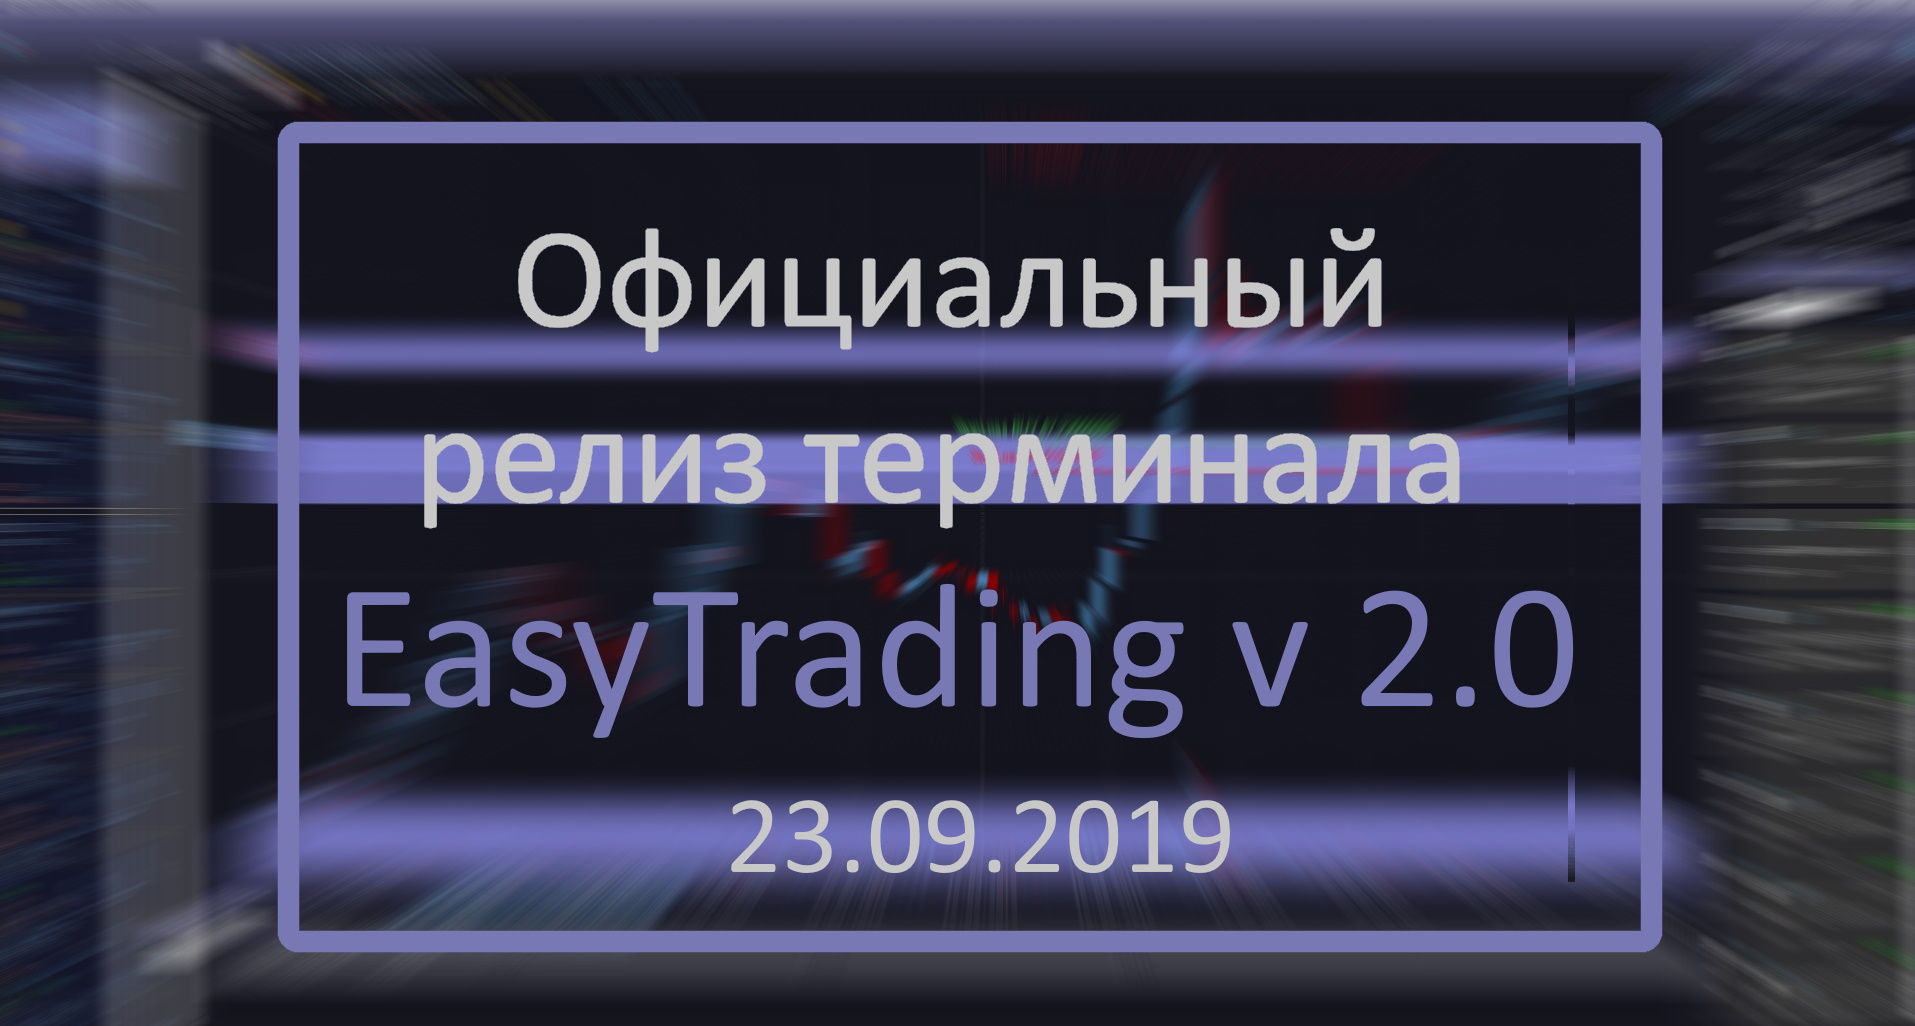 Официальный релиз торгового терминала Easytrading v.2.0